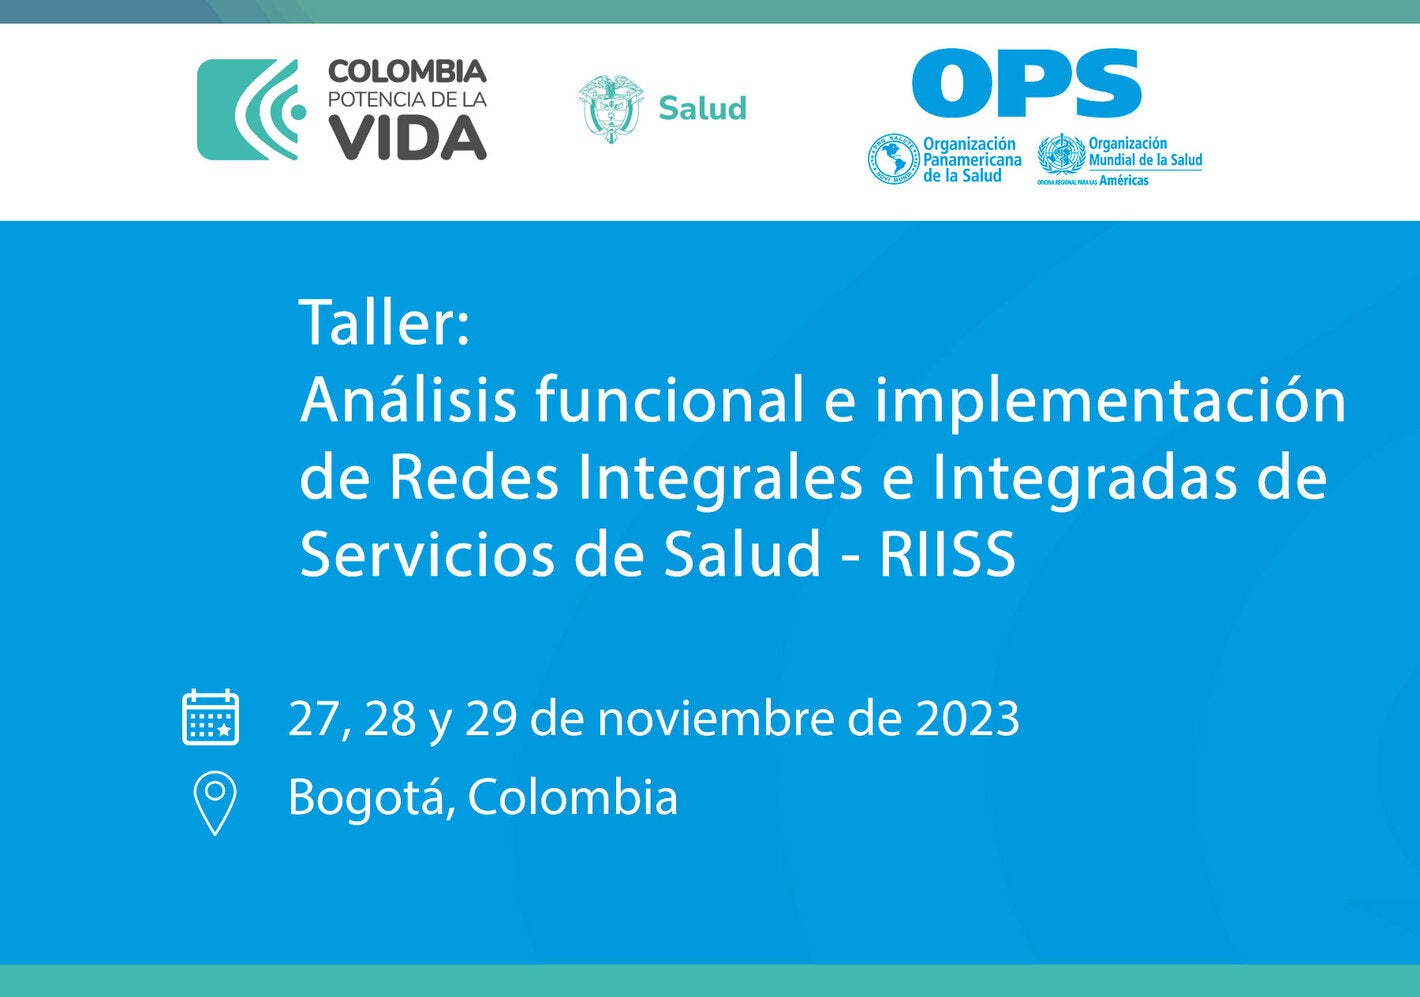 Taller: Análisis funcional e implementación de Redes Integrales e Integradas de Servicios de Salud - RIISS